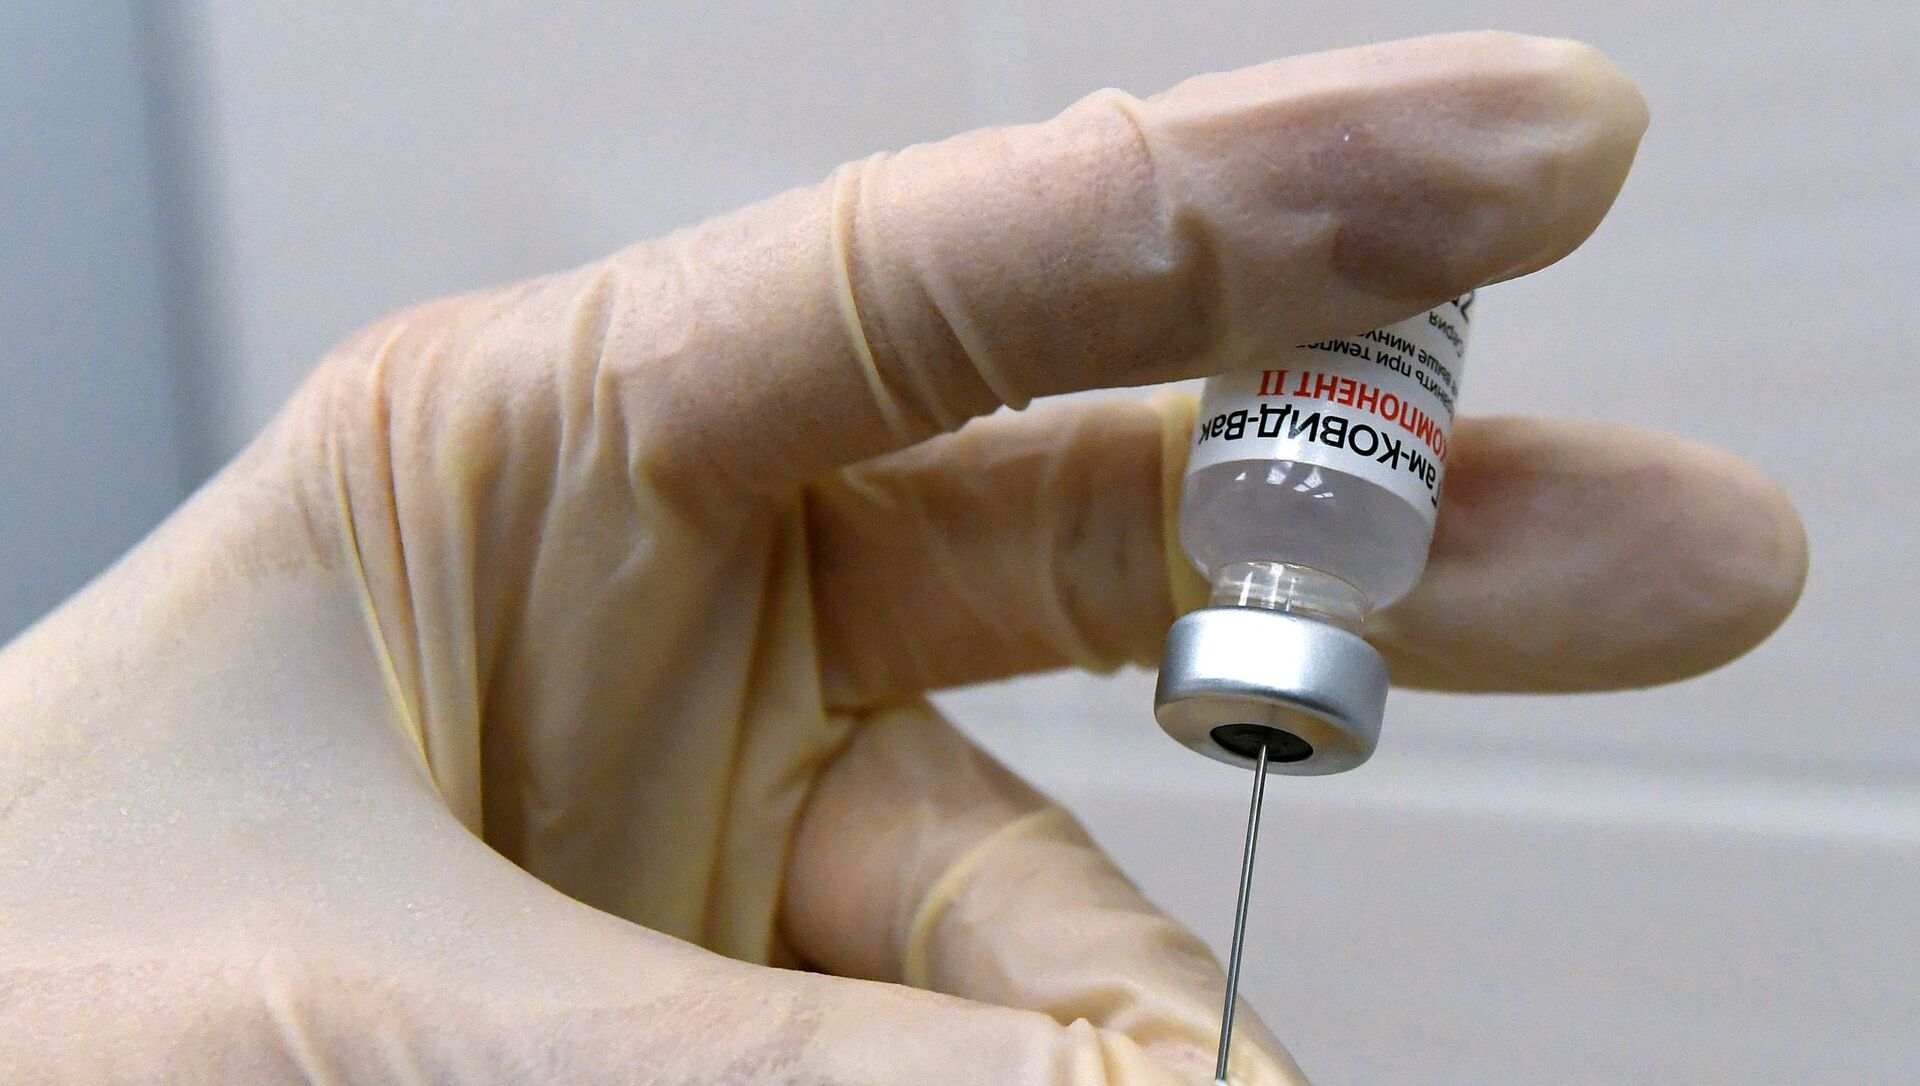 Медсестра набирает в шприц вакцину против COVID-19 Спутник V (Гам-КОВИД-Вак) - Sputnik Lietuva, 1920, 11.02.2021